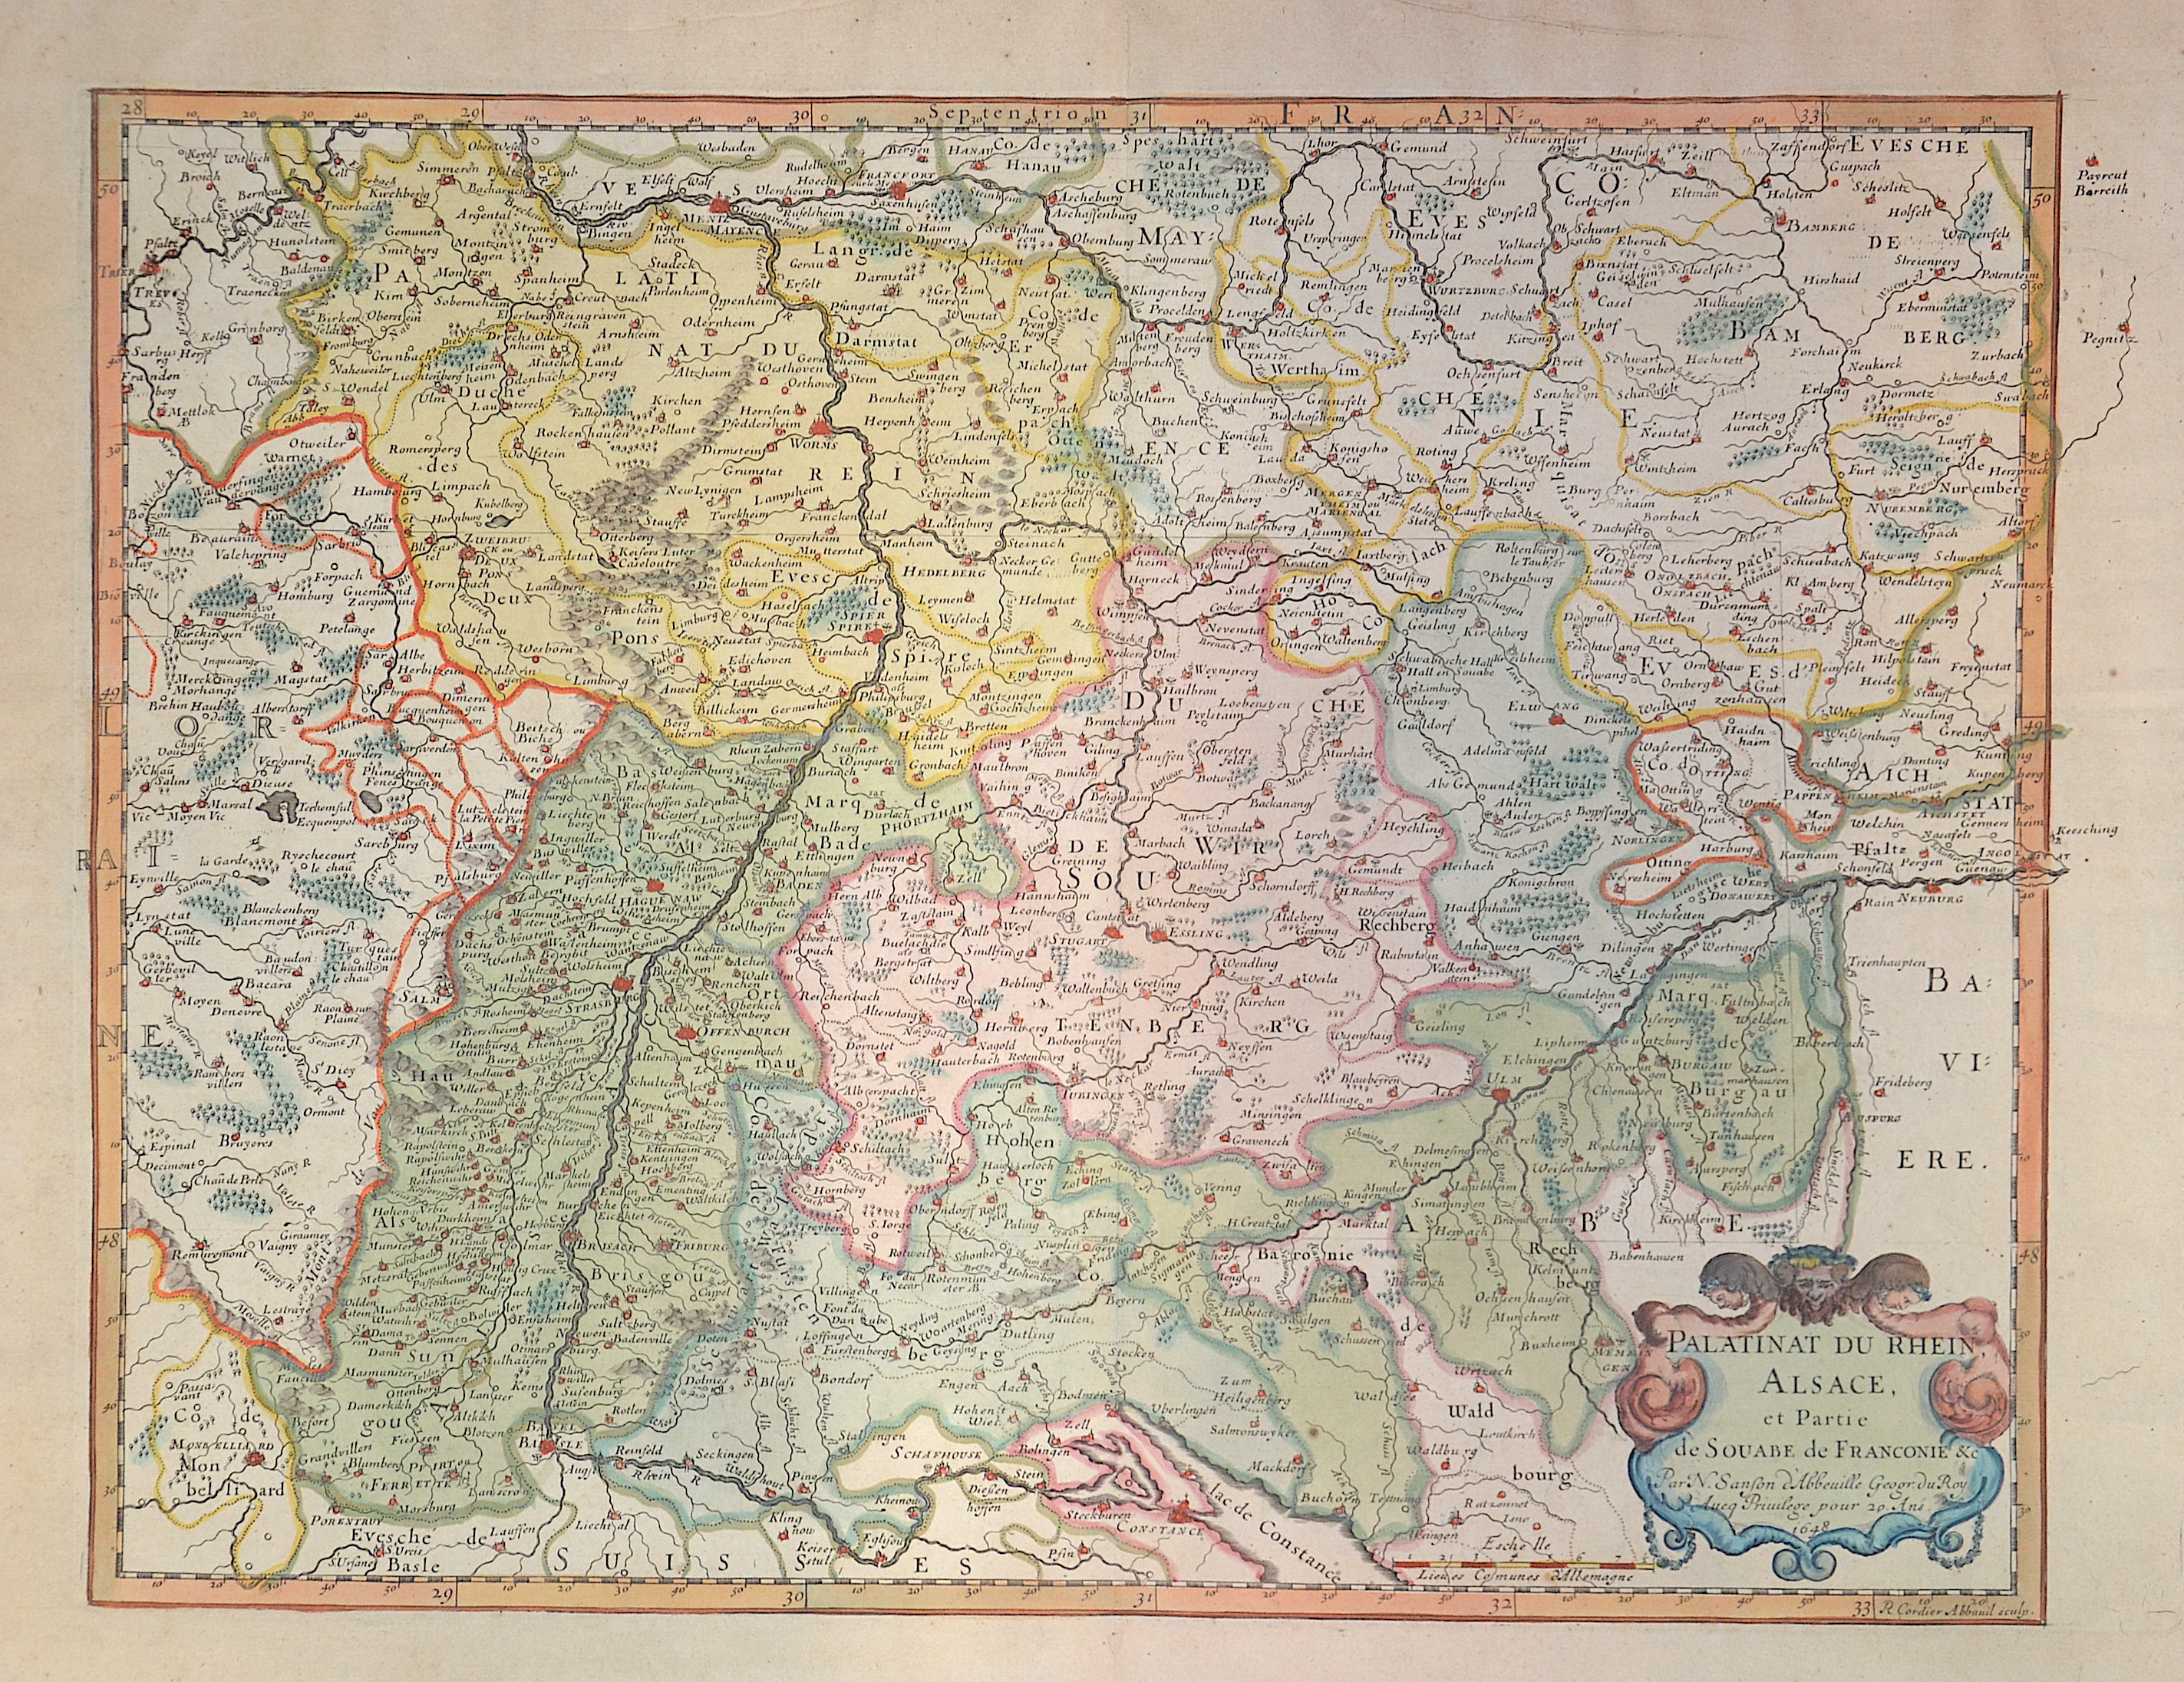 Sanson  Palatinat du Rhein, Alsace et partie de Souabe de Farnconie